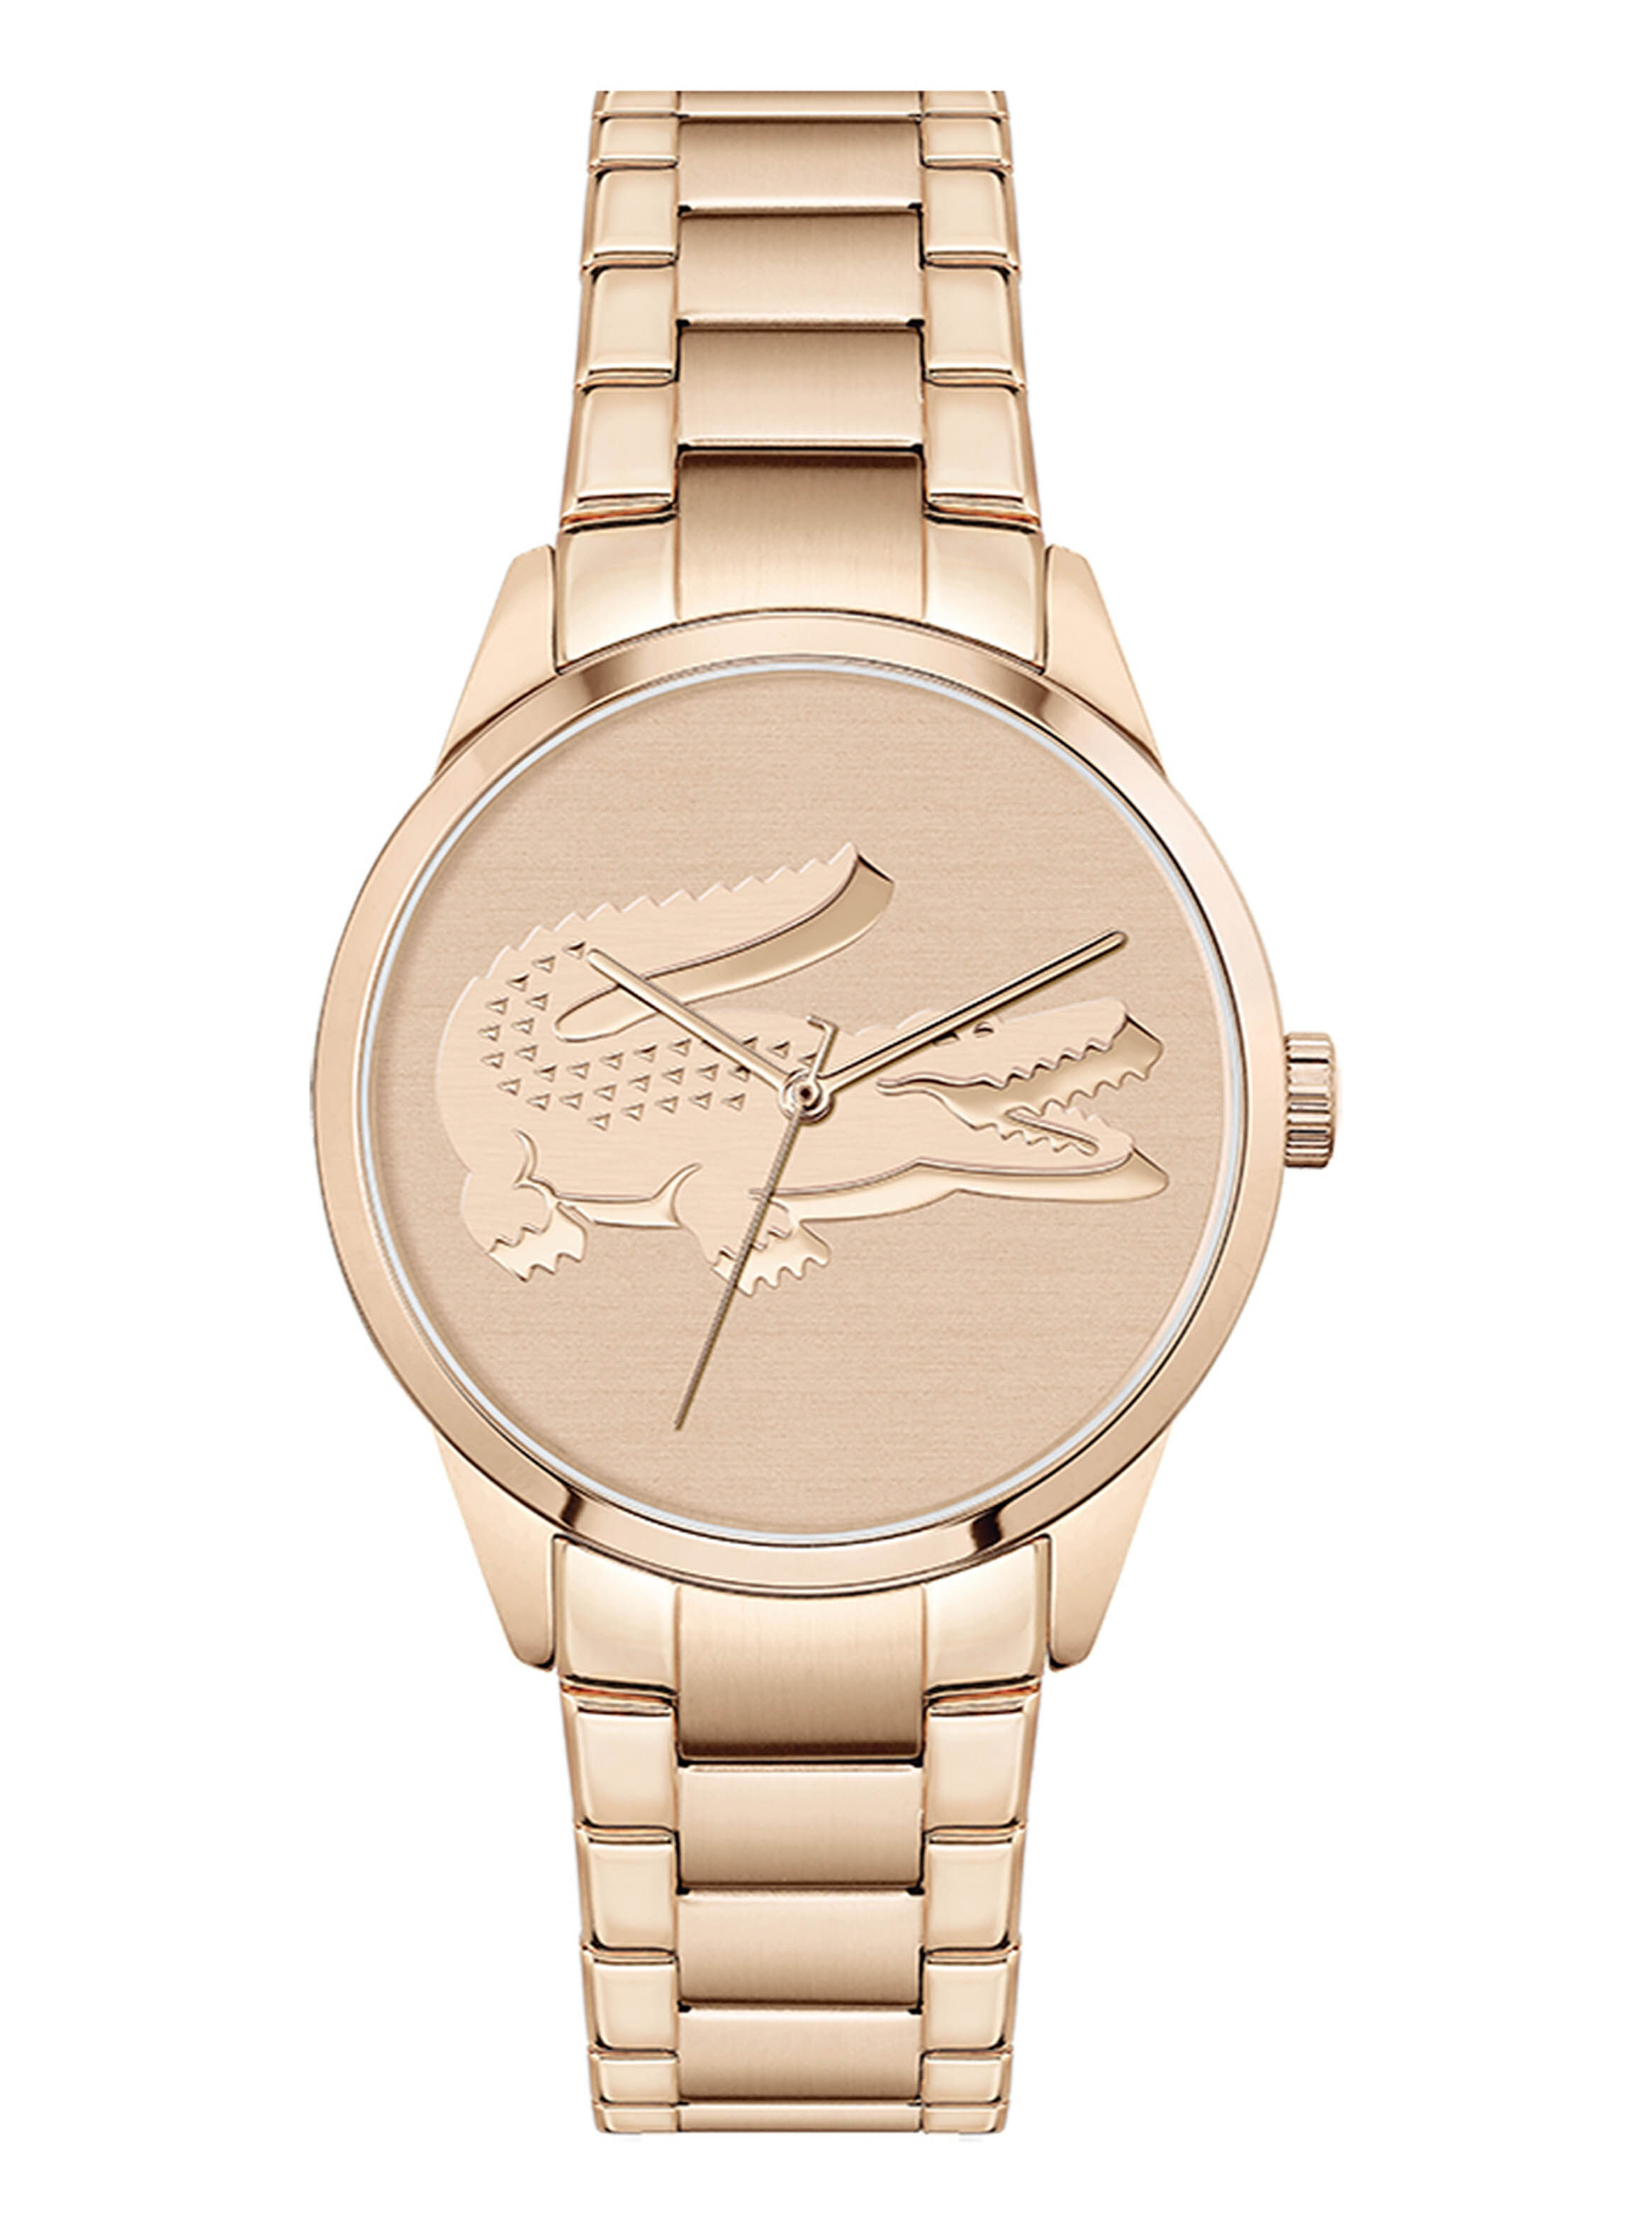 Reloj Lacoste 2001172 Oro Rosa Mujer - Relojes